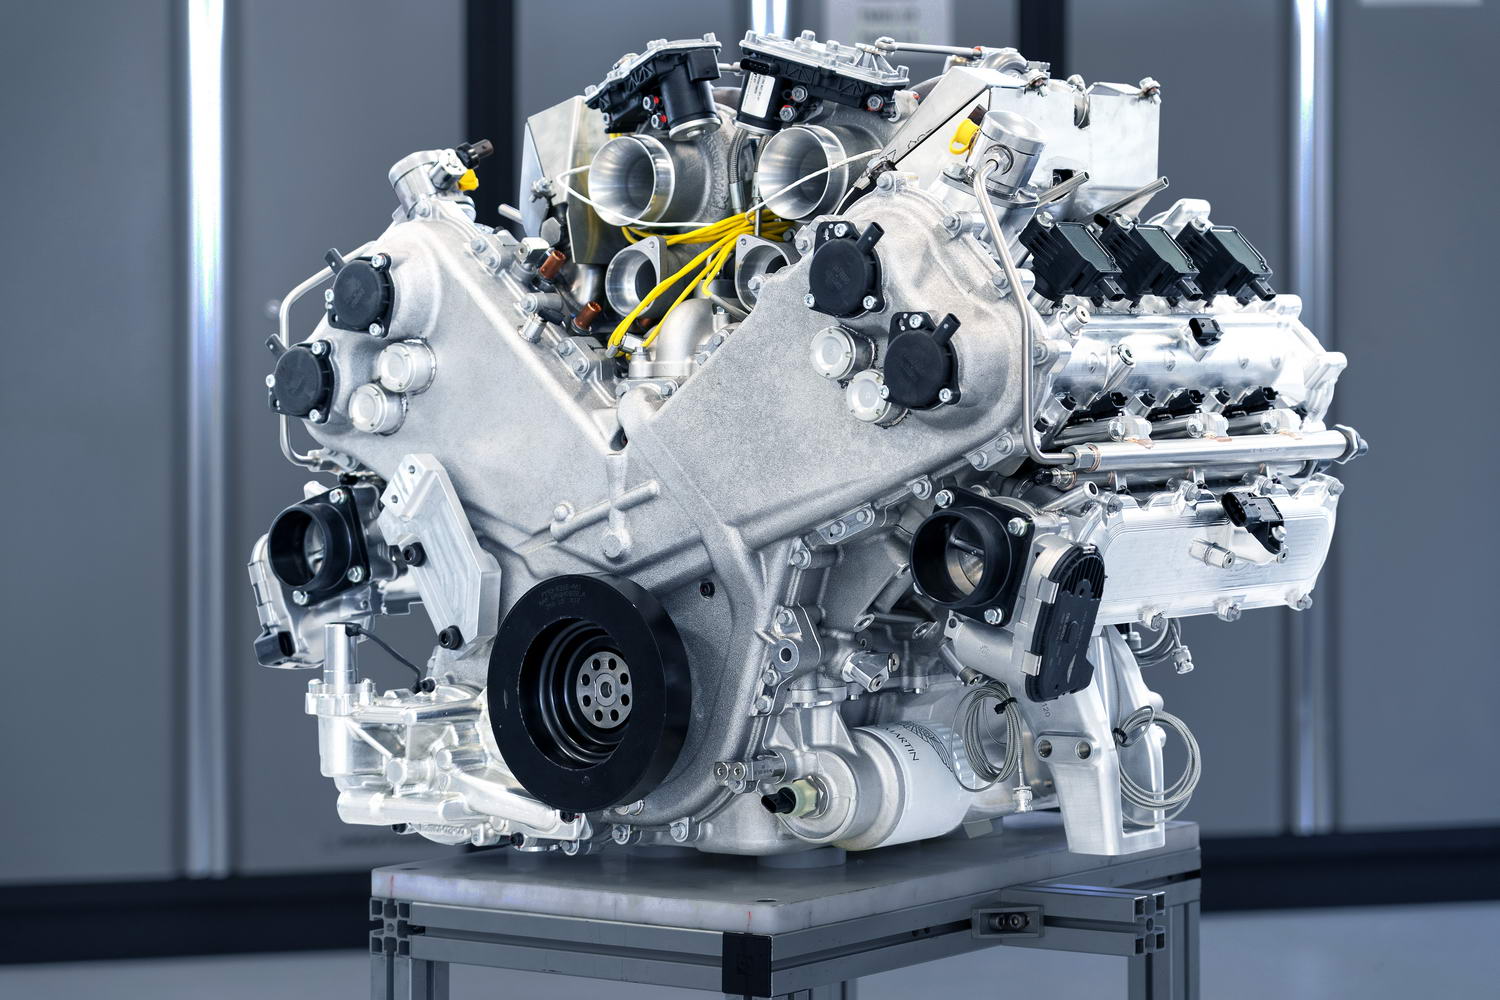 Aston Martin working on own V6 turbo